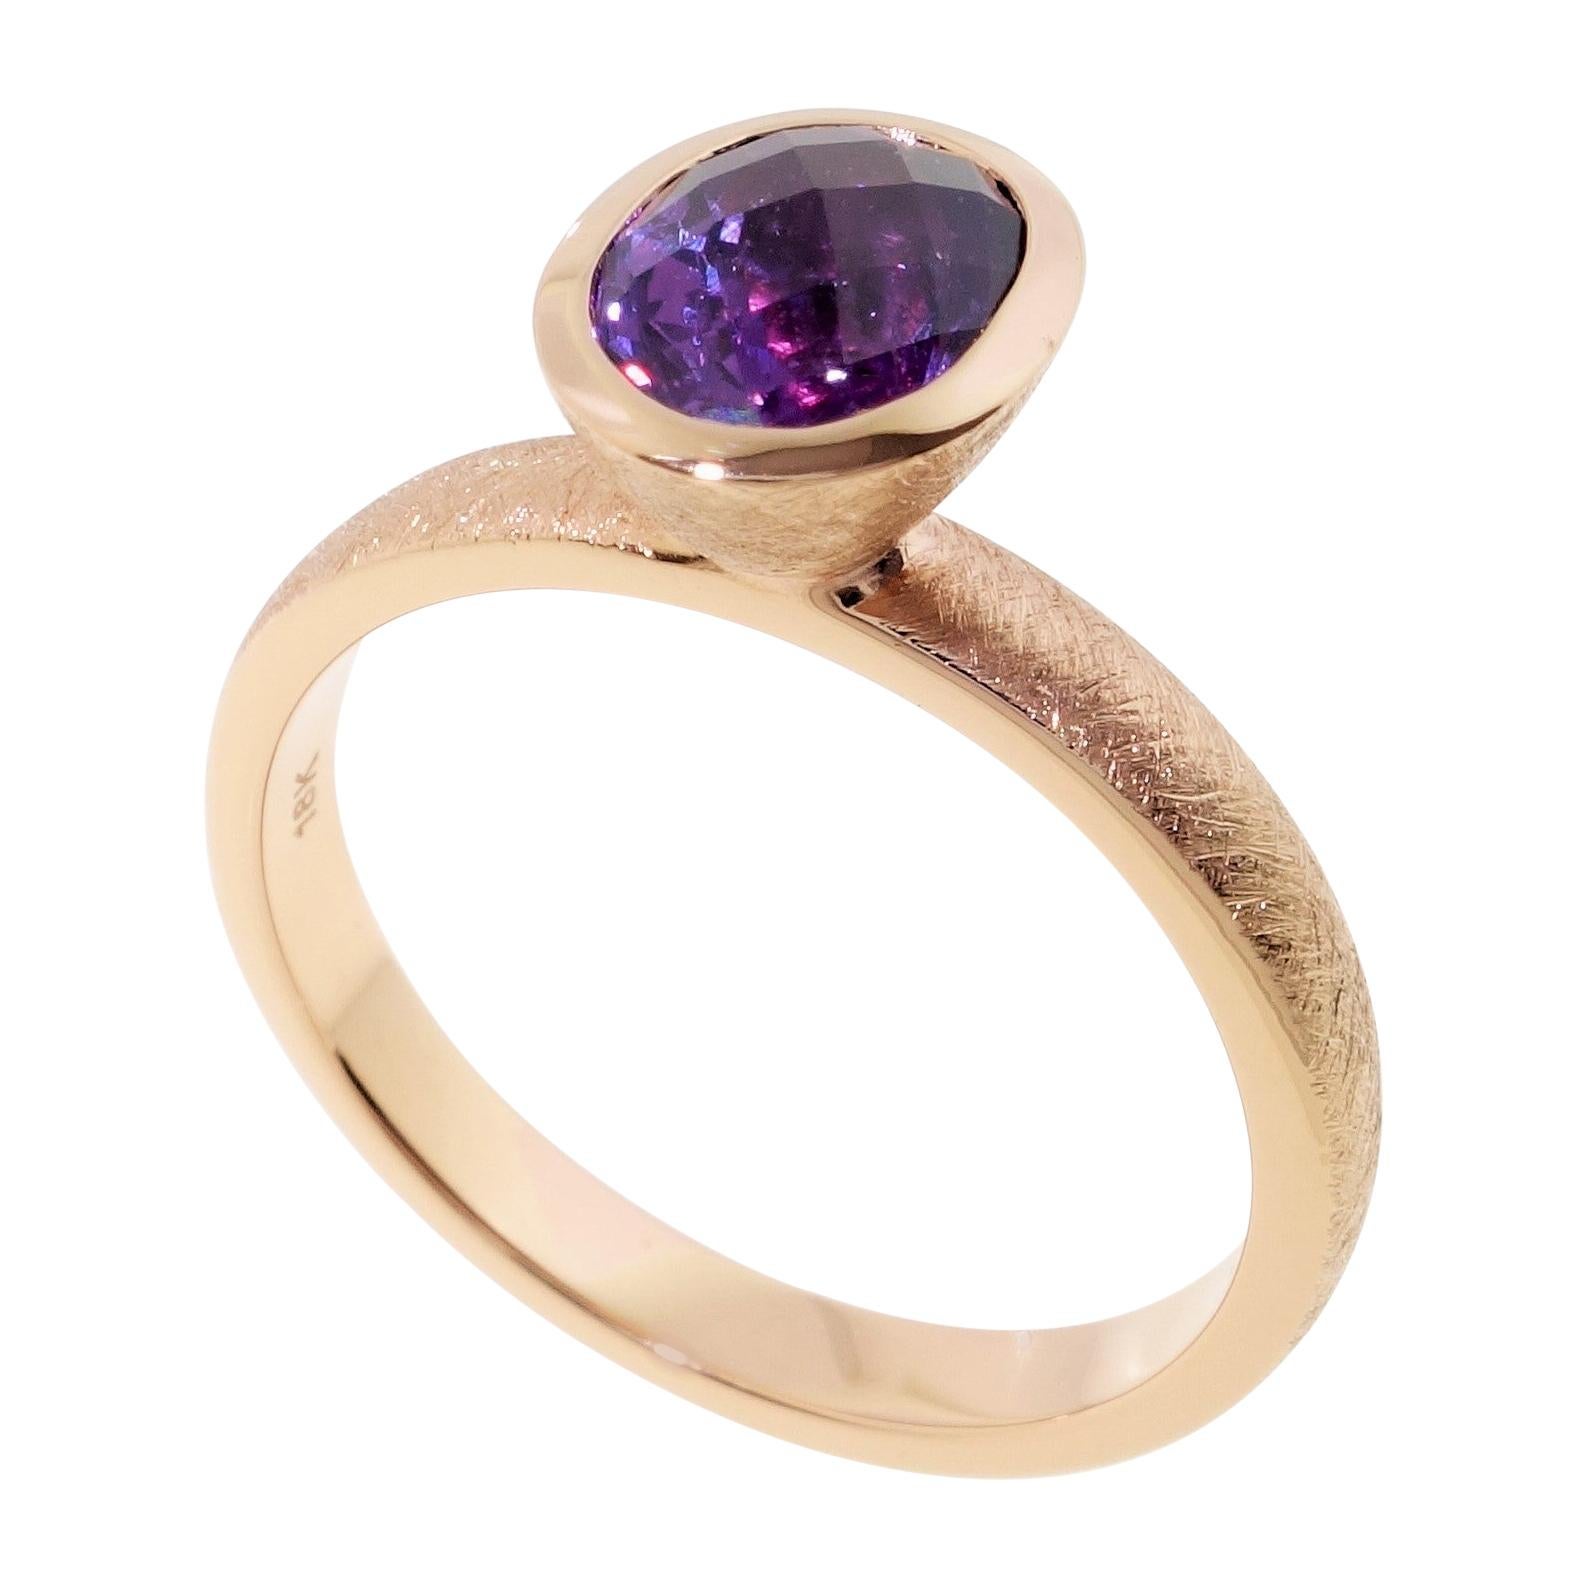 Bague empilable moderniste en or 18 carats avec saphir violet, bijouterie d'art